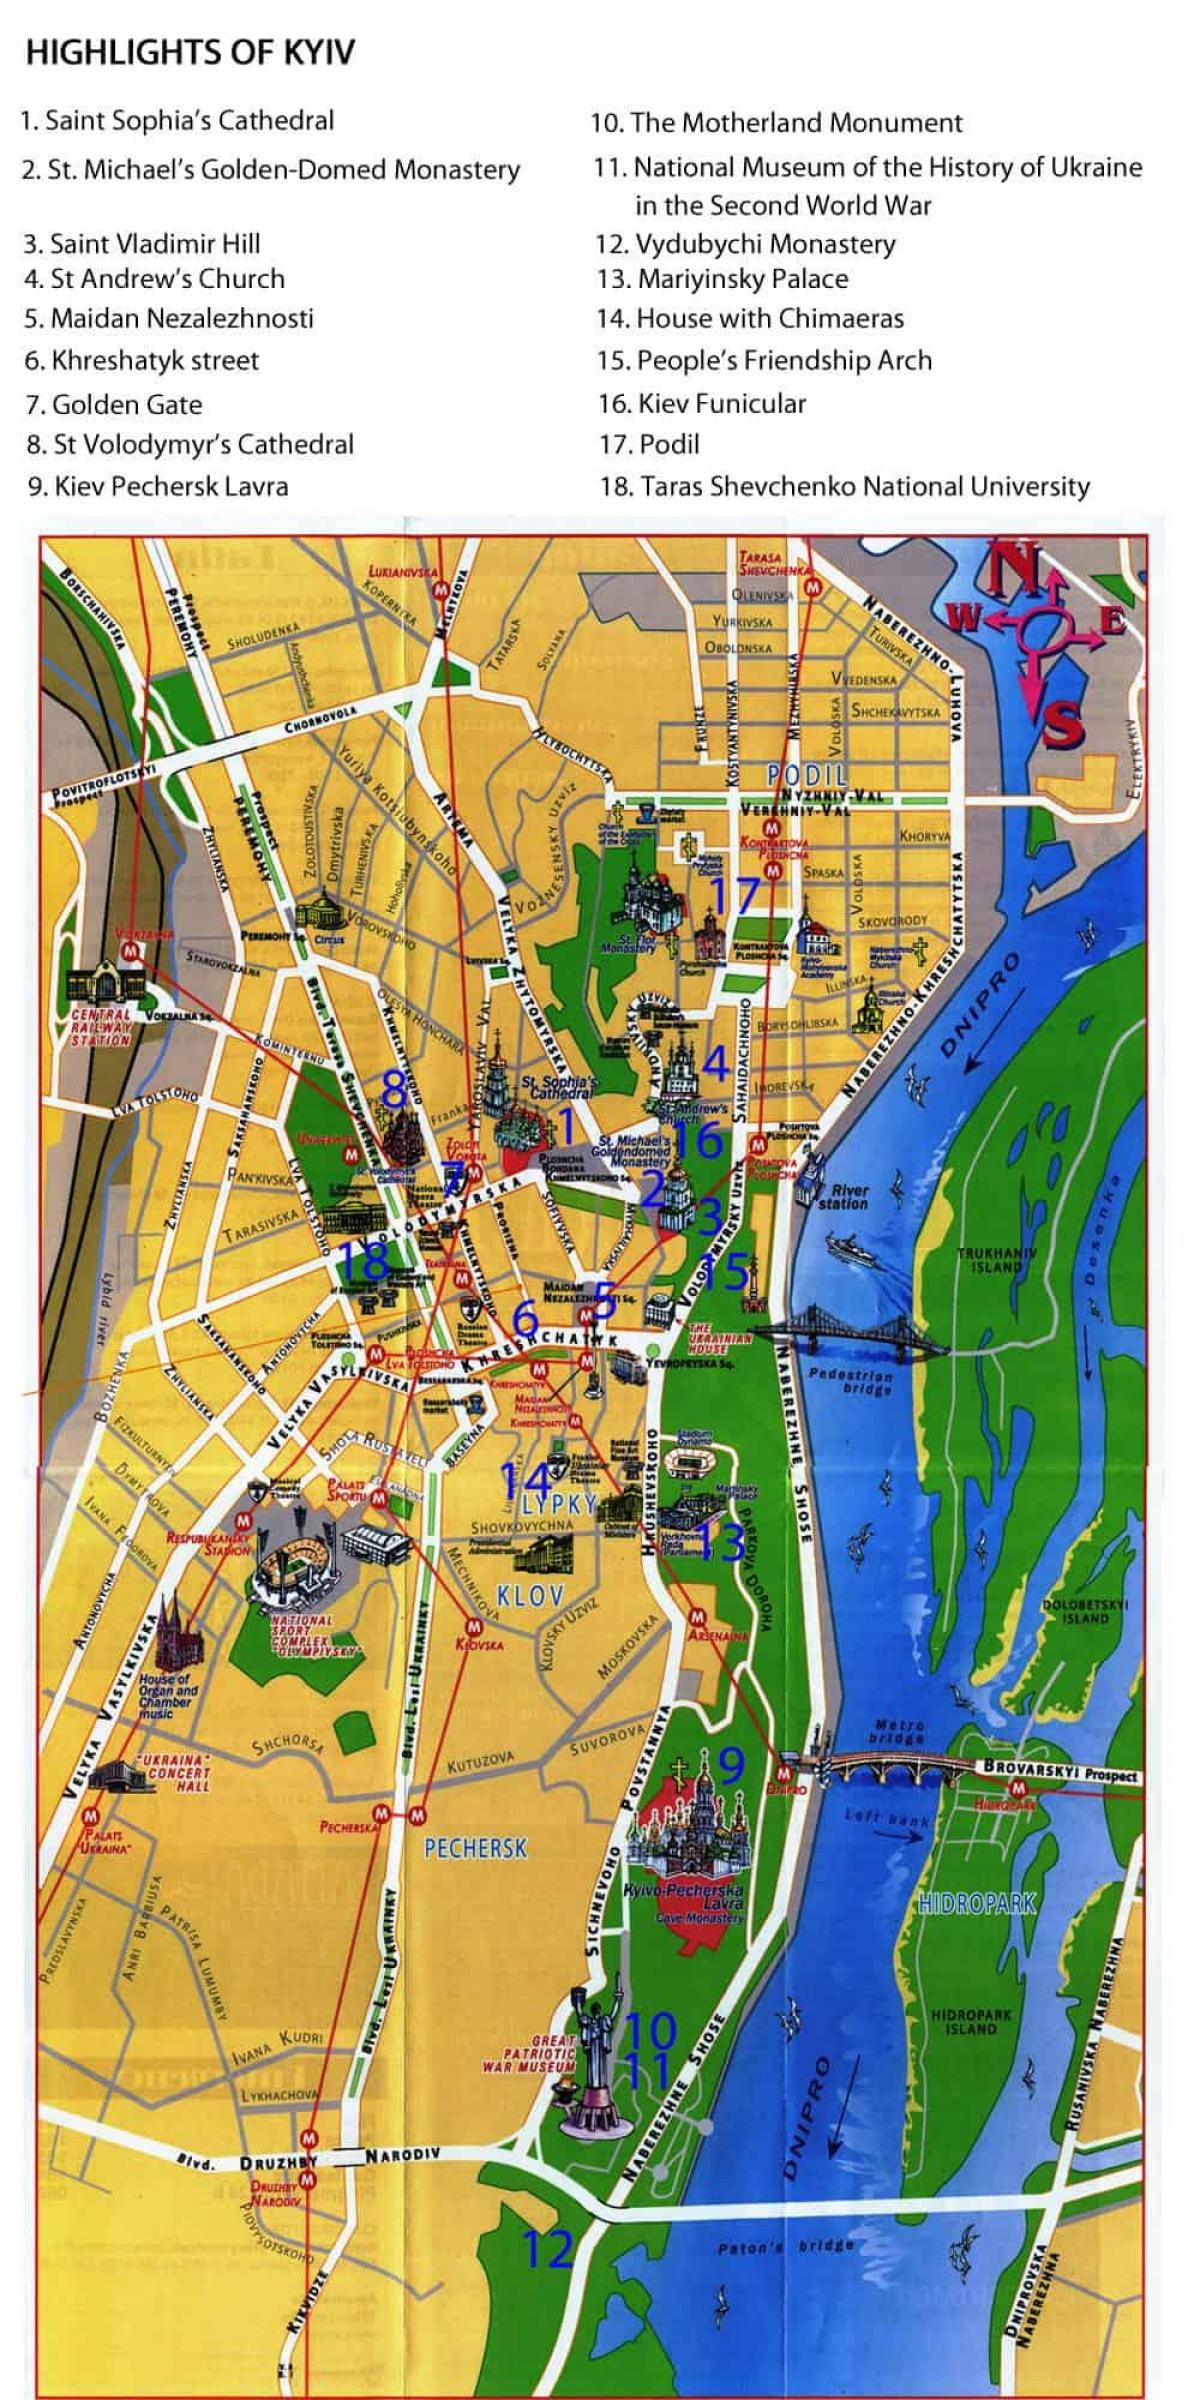 Mappa turistica di Kiev